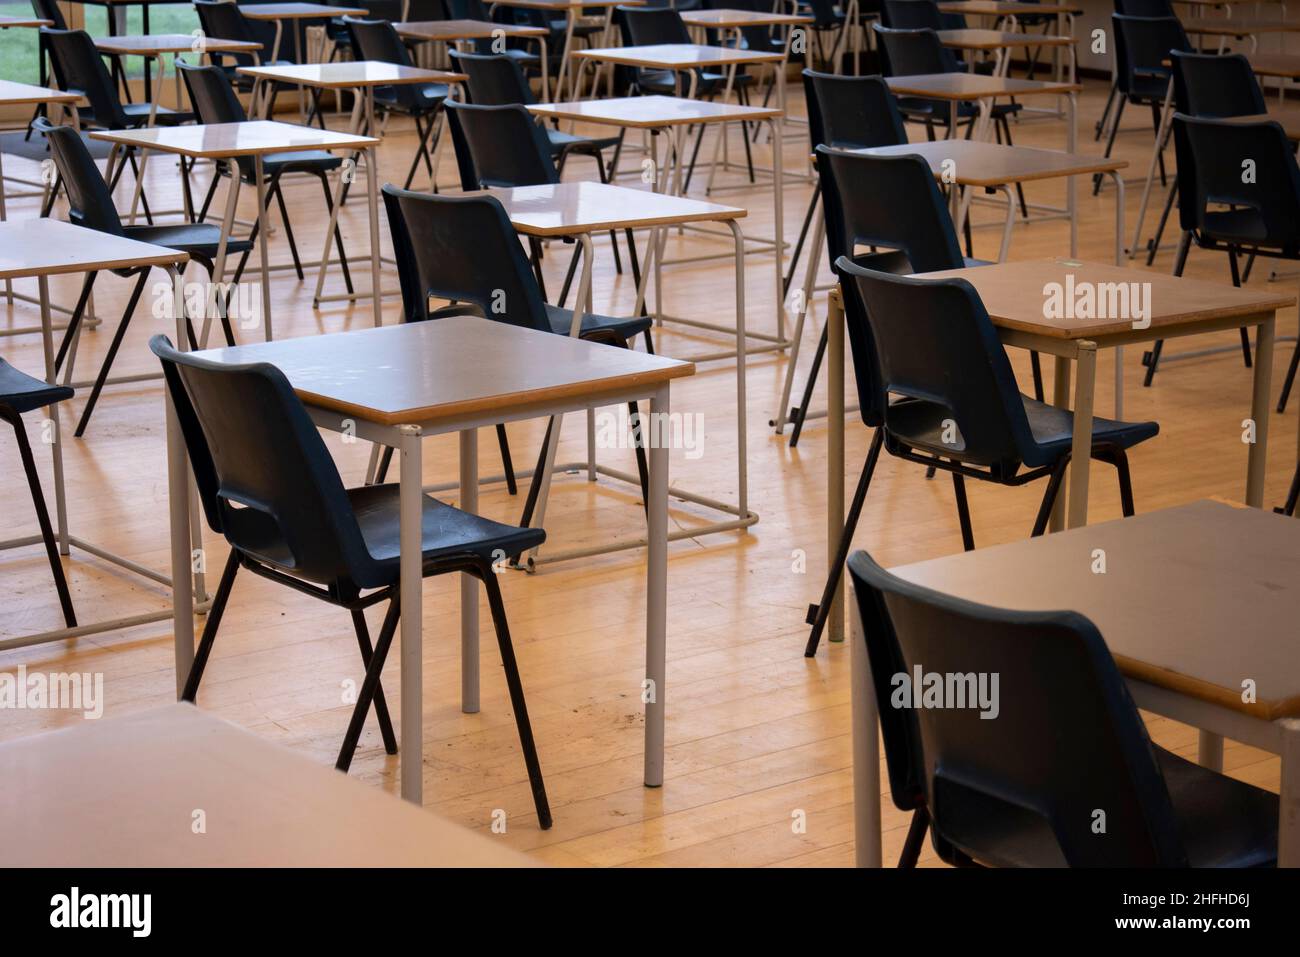 Schulstühle und -Tische für Prüfungen in einer Schulhalle. Frühe Vorbereitung auf Untersuchungen in einem Prüfungsraum Stockfoto